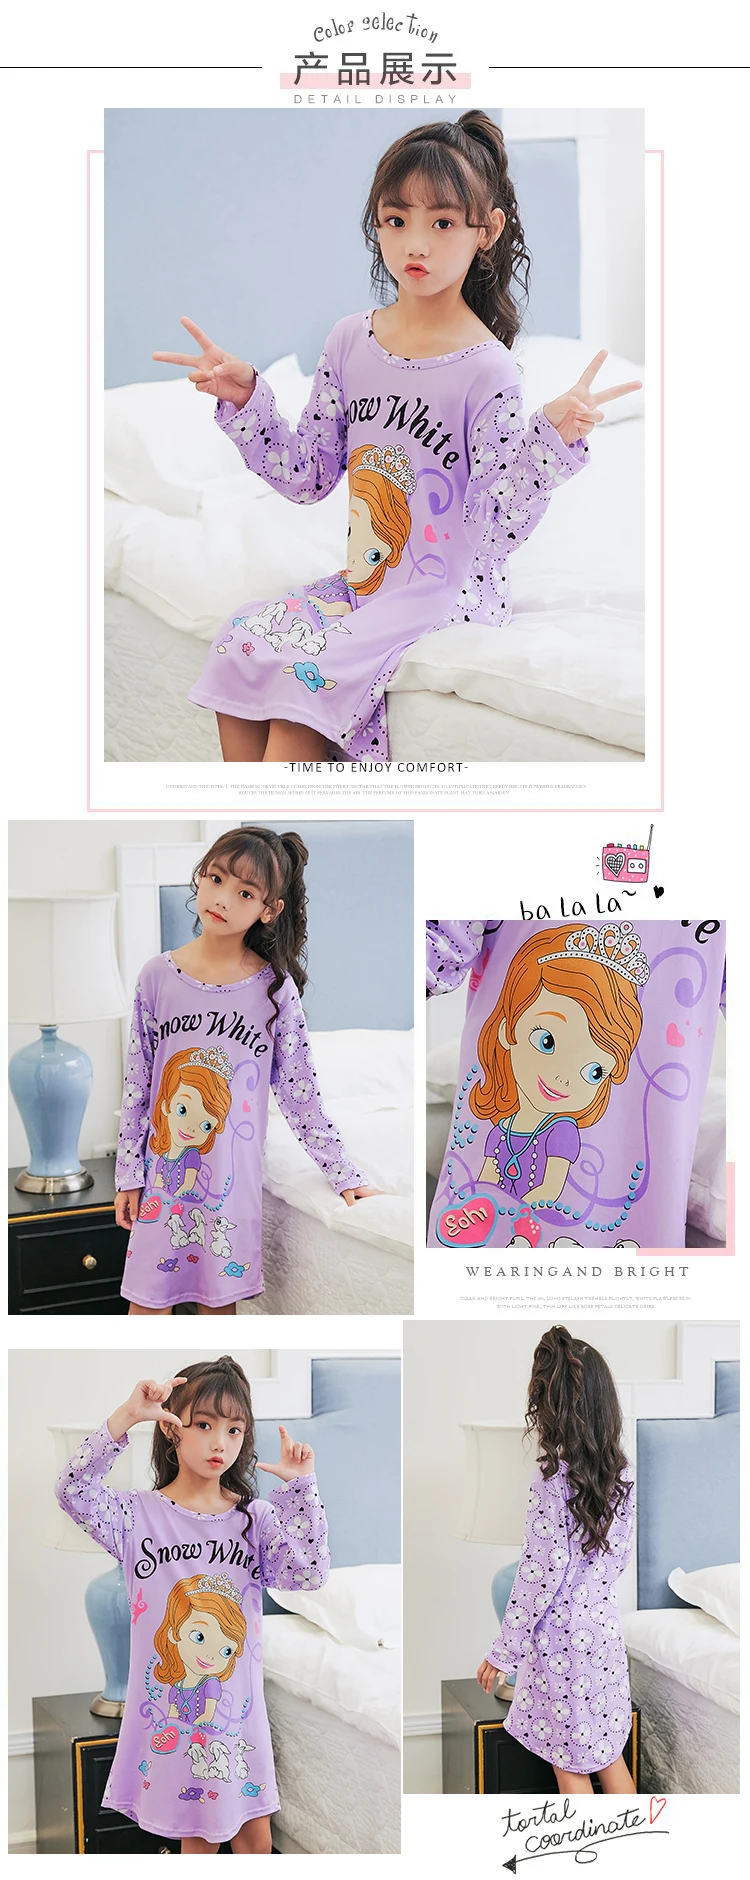 RN-9 детская одежда для сна с длинным рукавом в году Осень Девочки ночные рубашки мультфильм дети милые весна принцесса пижамы для сна партии